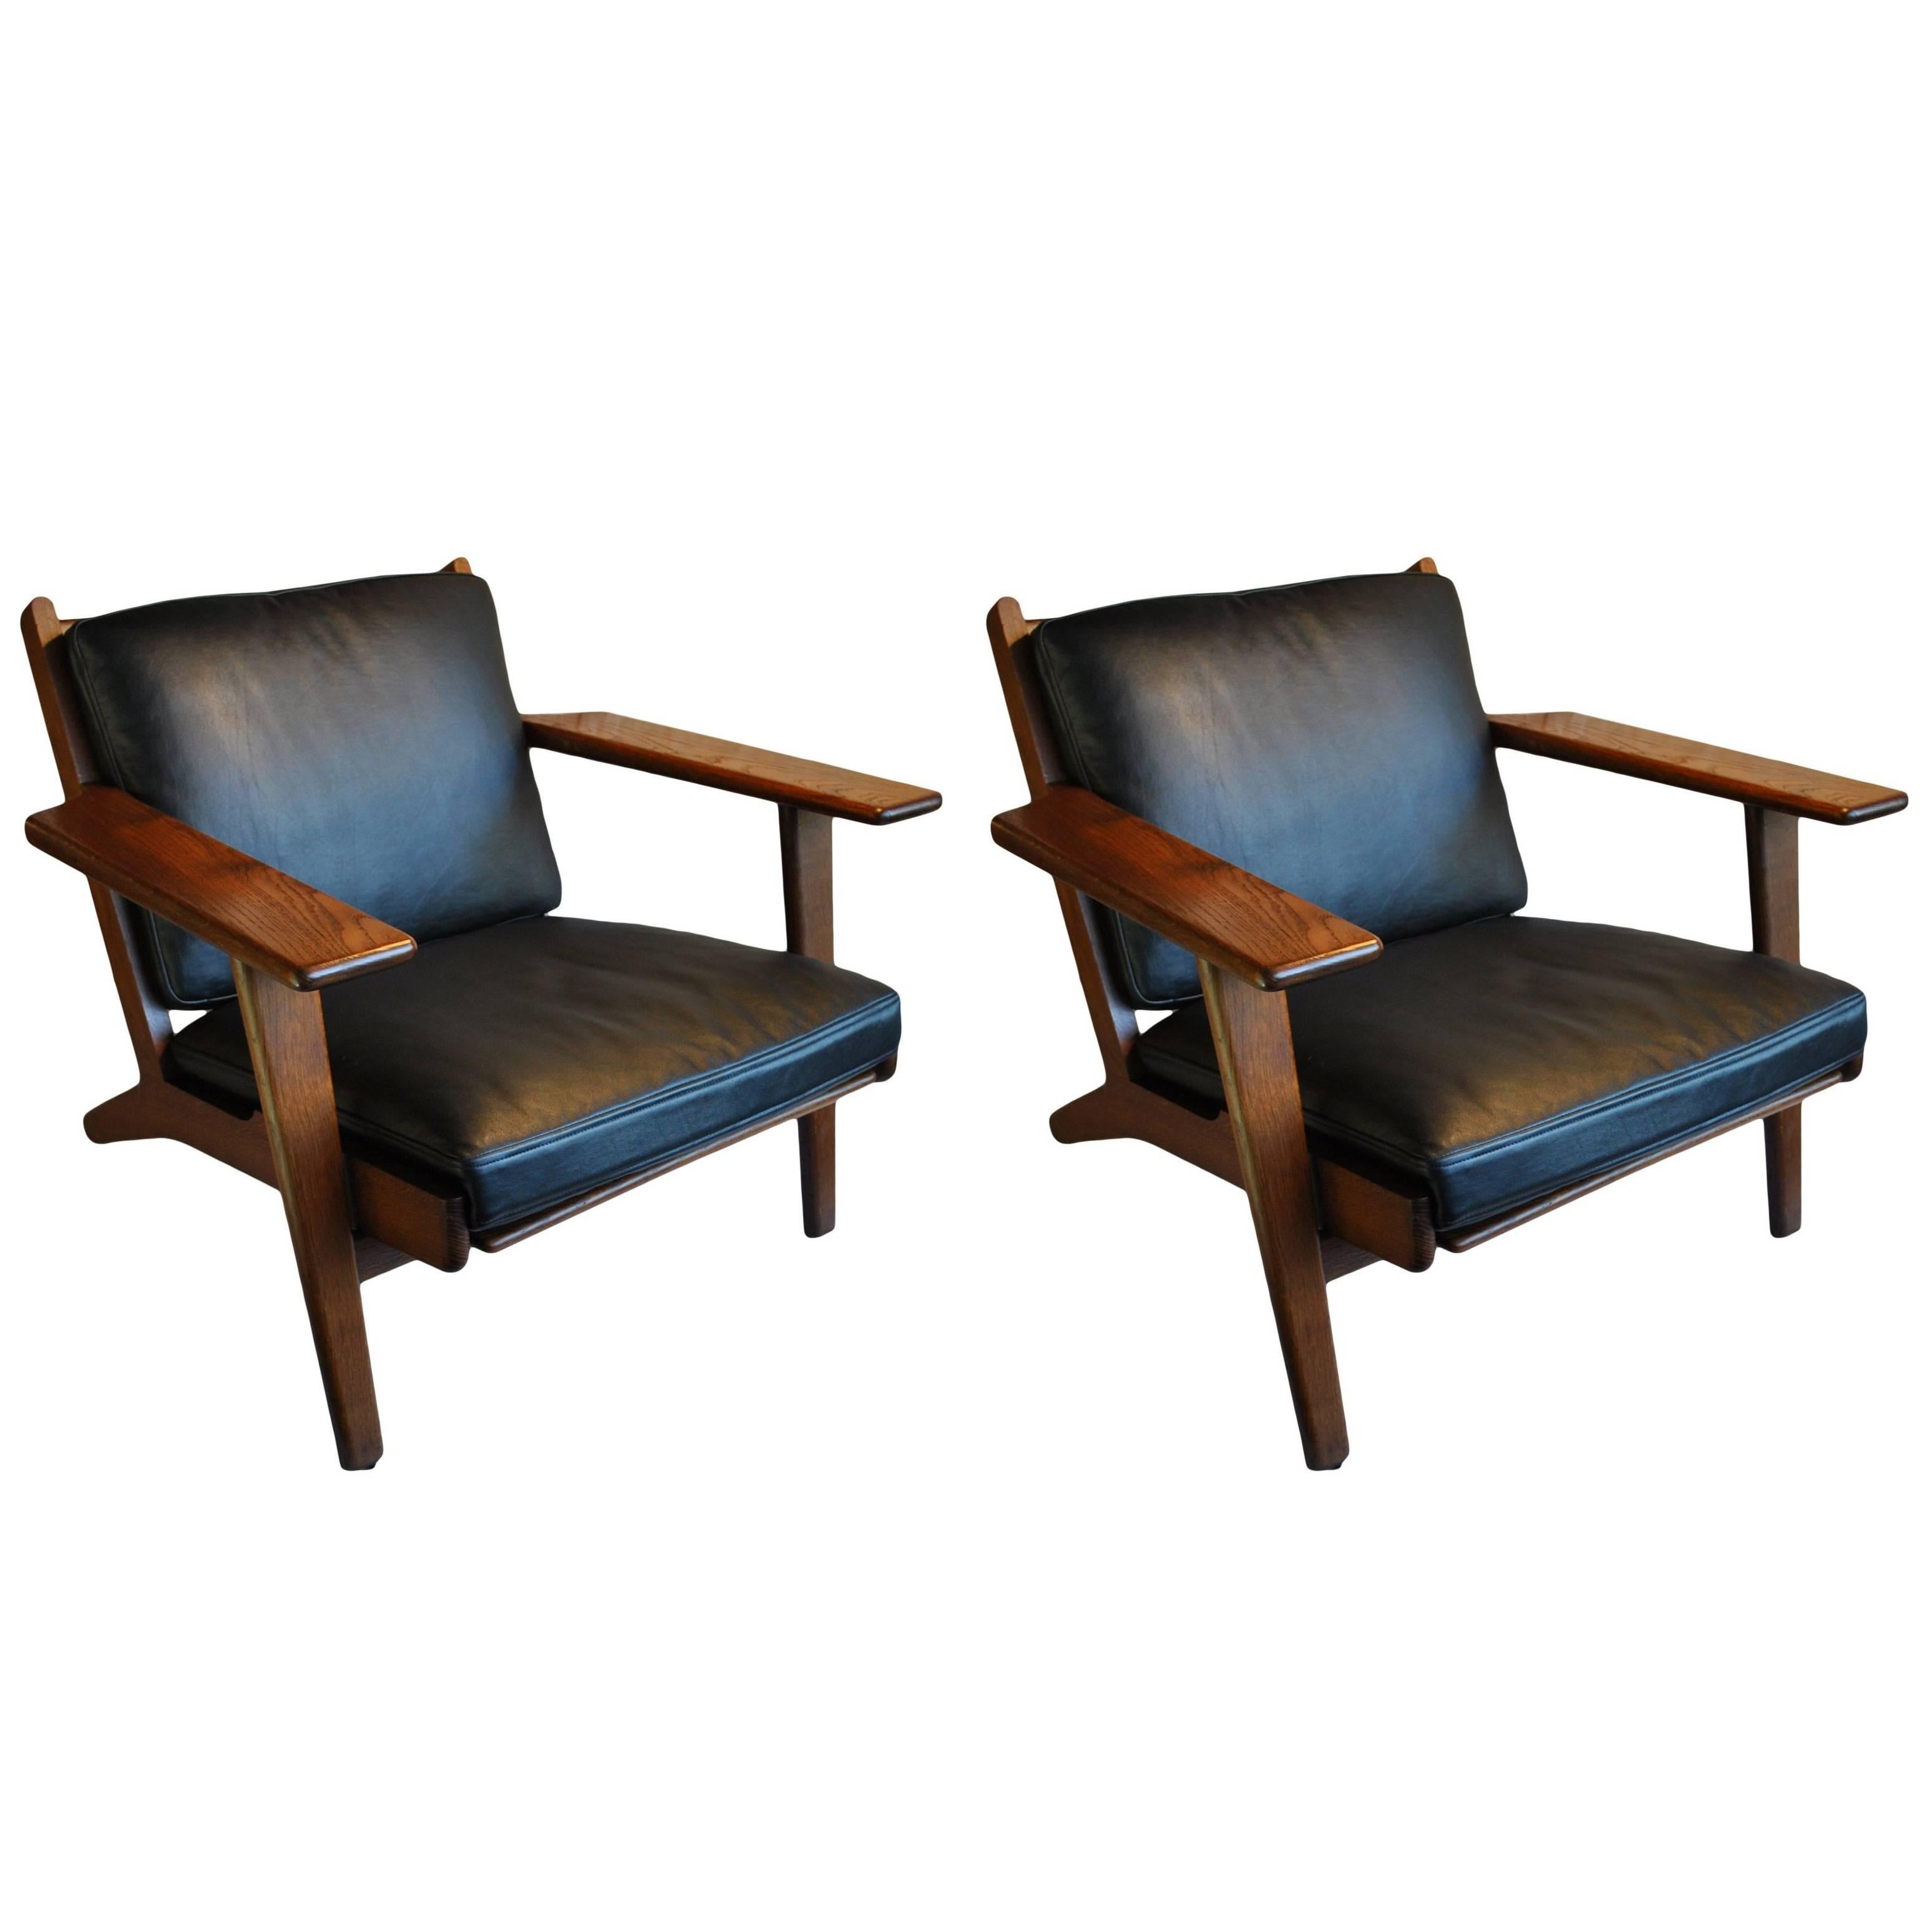 Pair of Hans J Wegner GE290 Lounge Chairs, Fumed Oak, Fully Refurbished